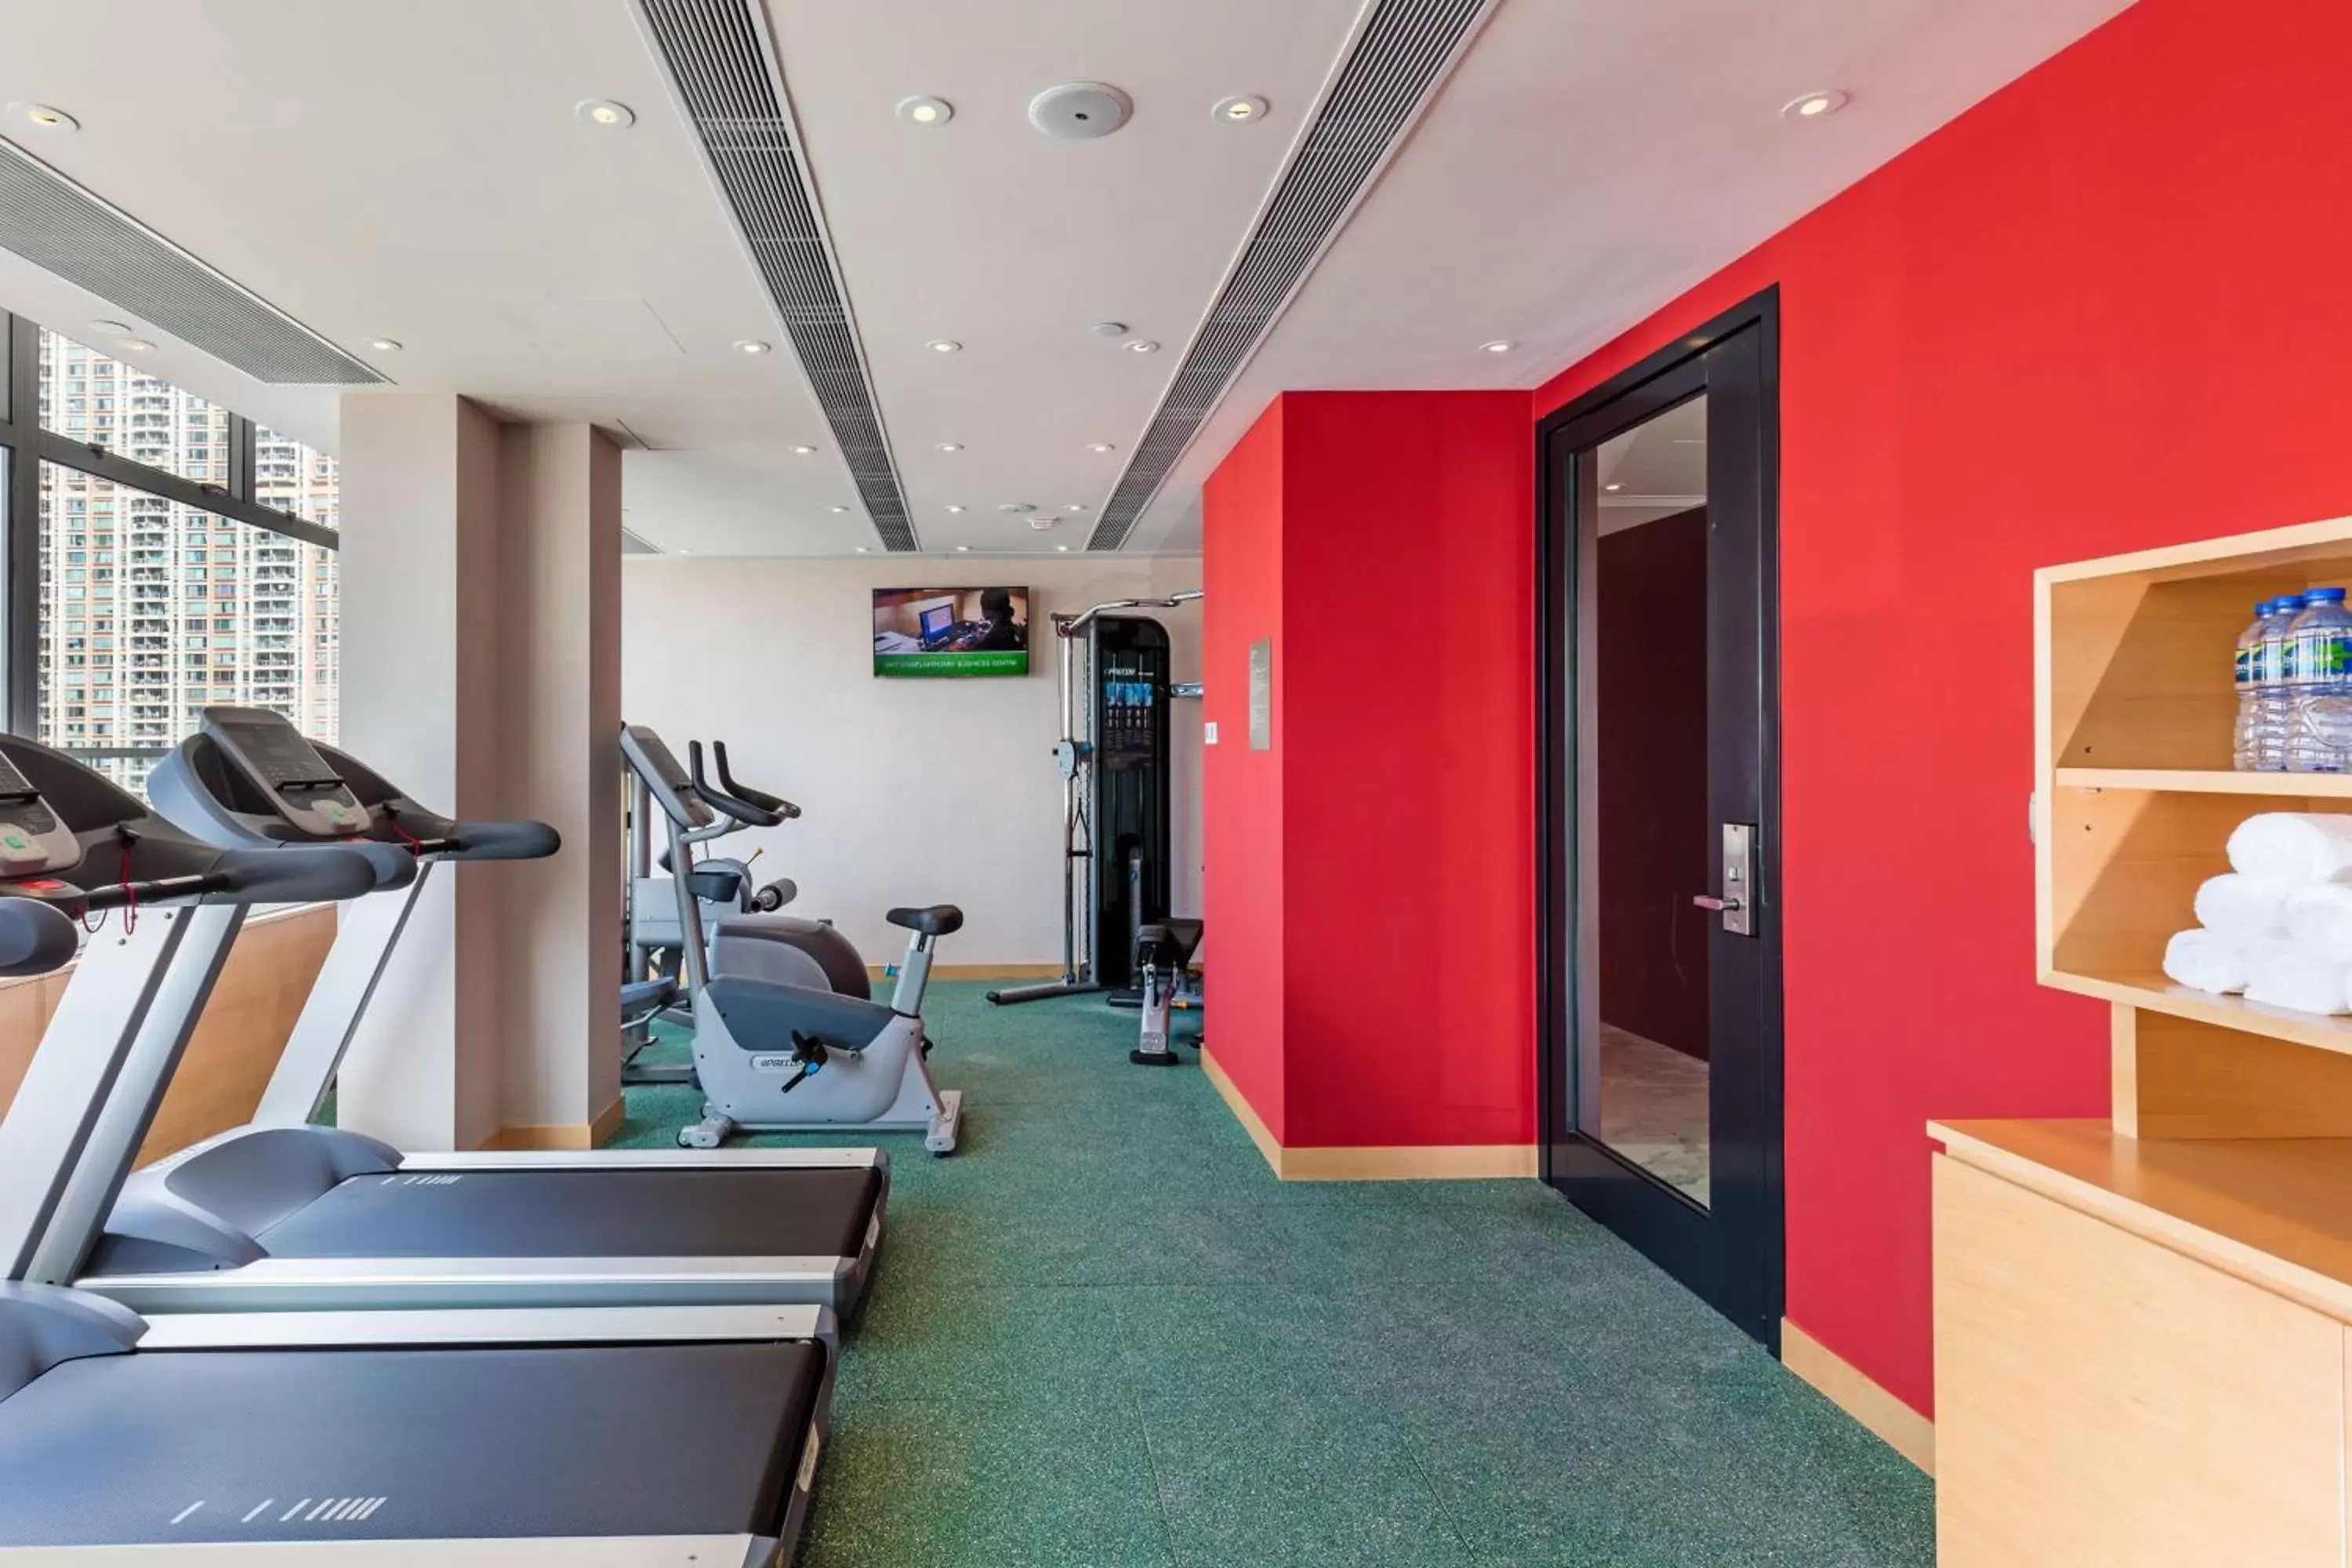 Fitness centre/facilities, Fitness Center/Facilities in Hilton Garden Inn Hong Kong Mongkok